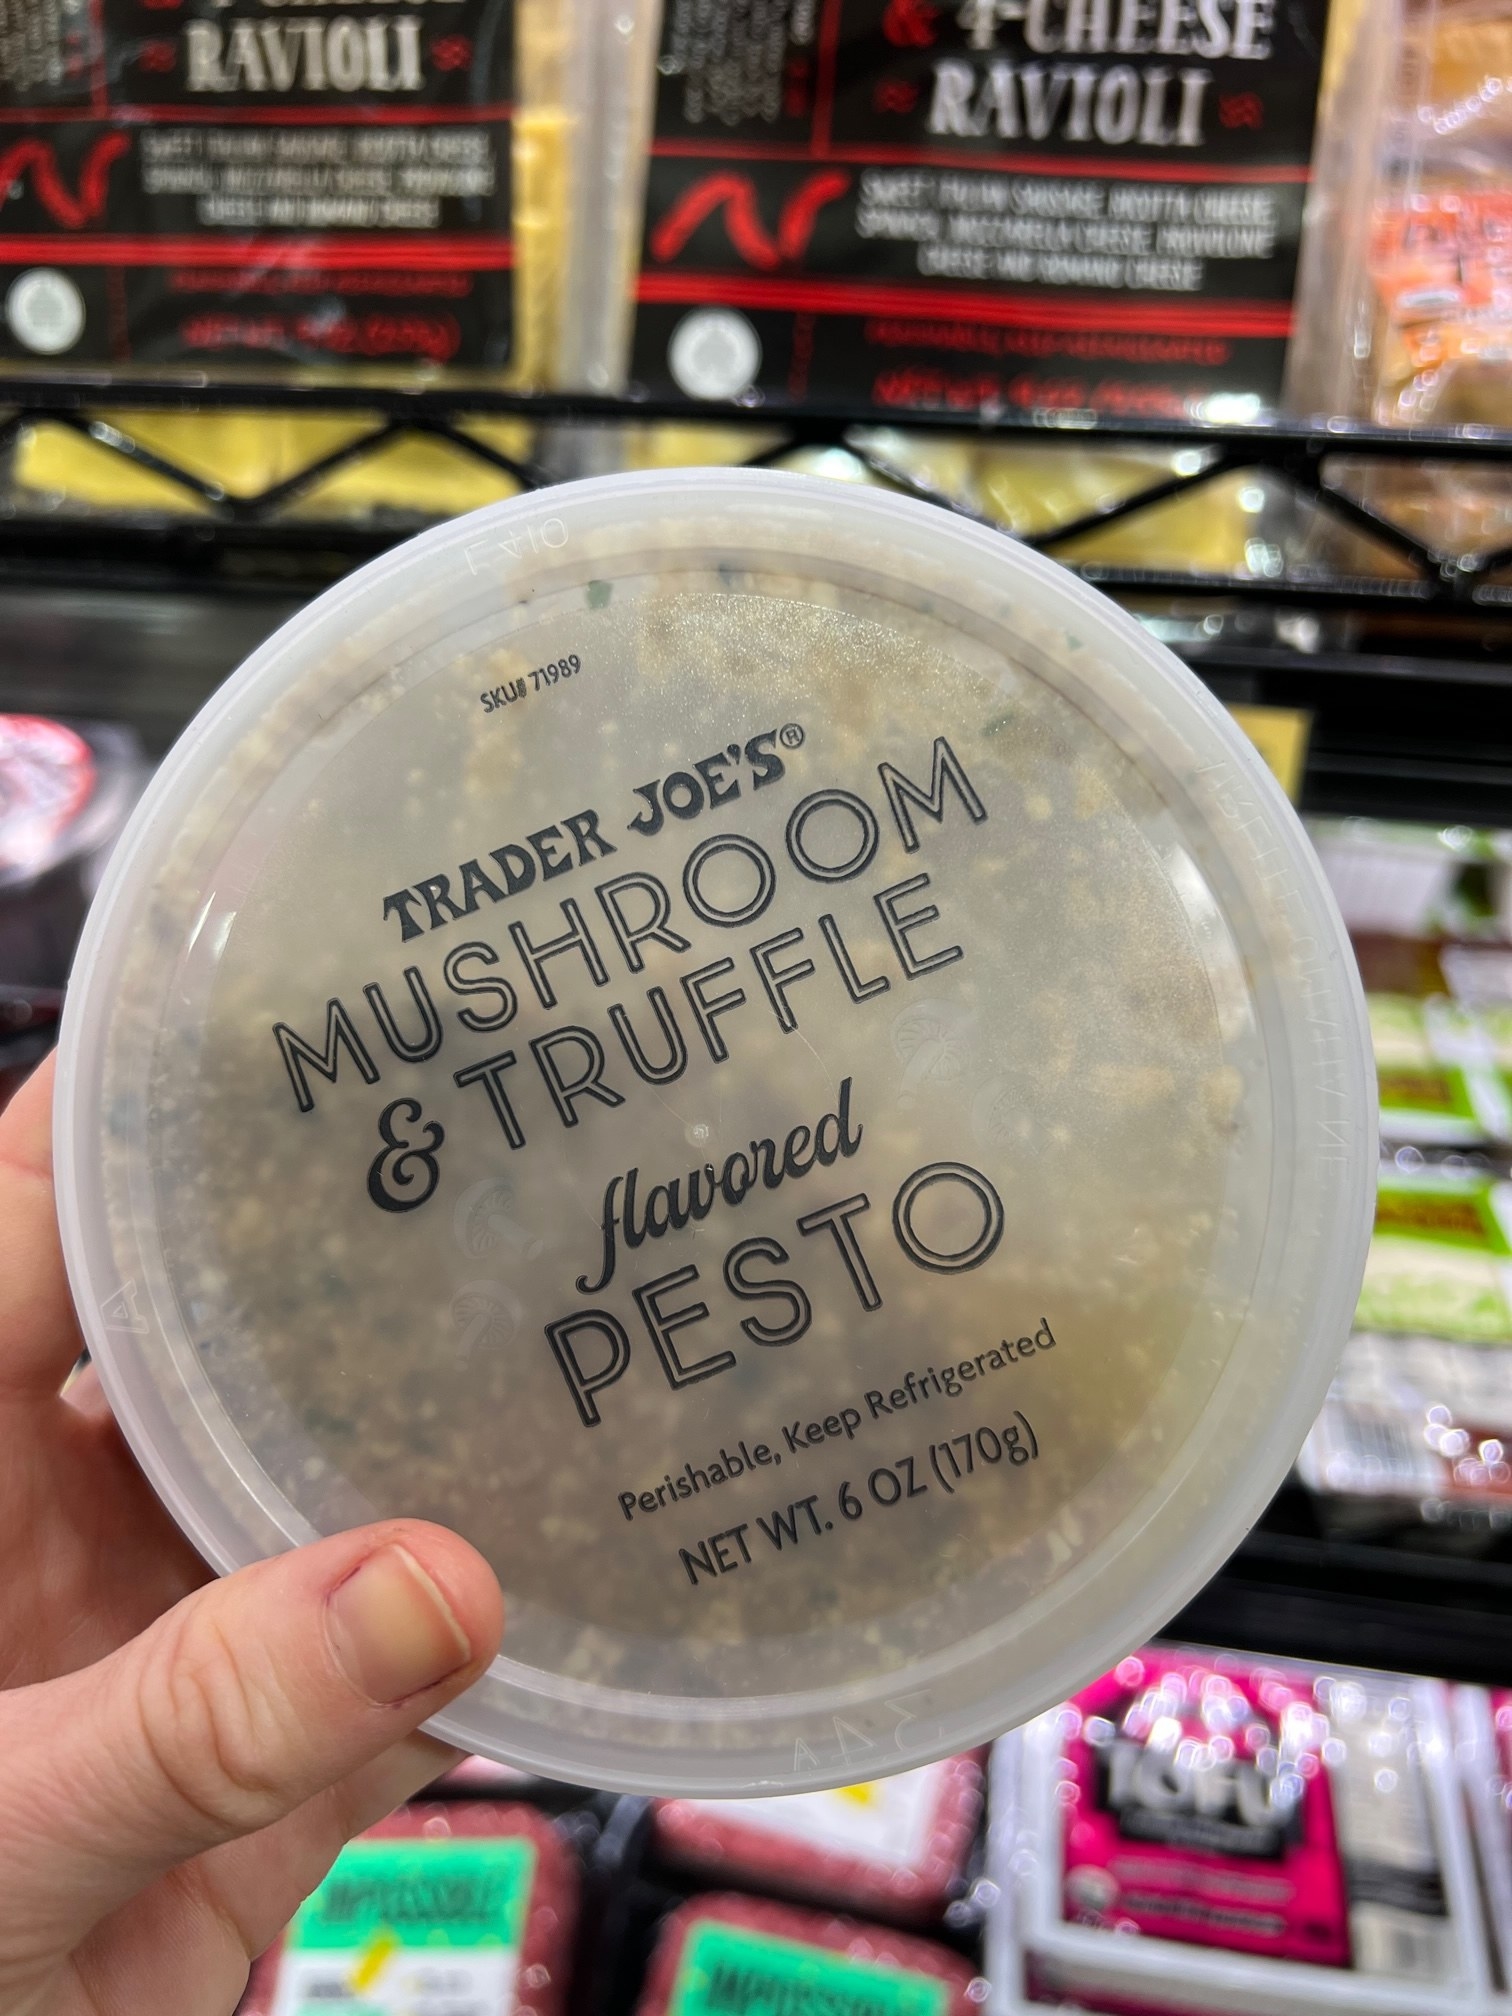 Mushroom &amp; Truffle Flavored Pesto